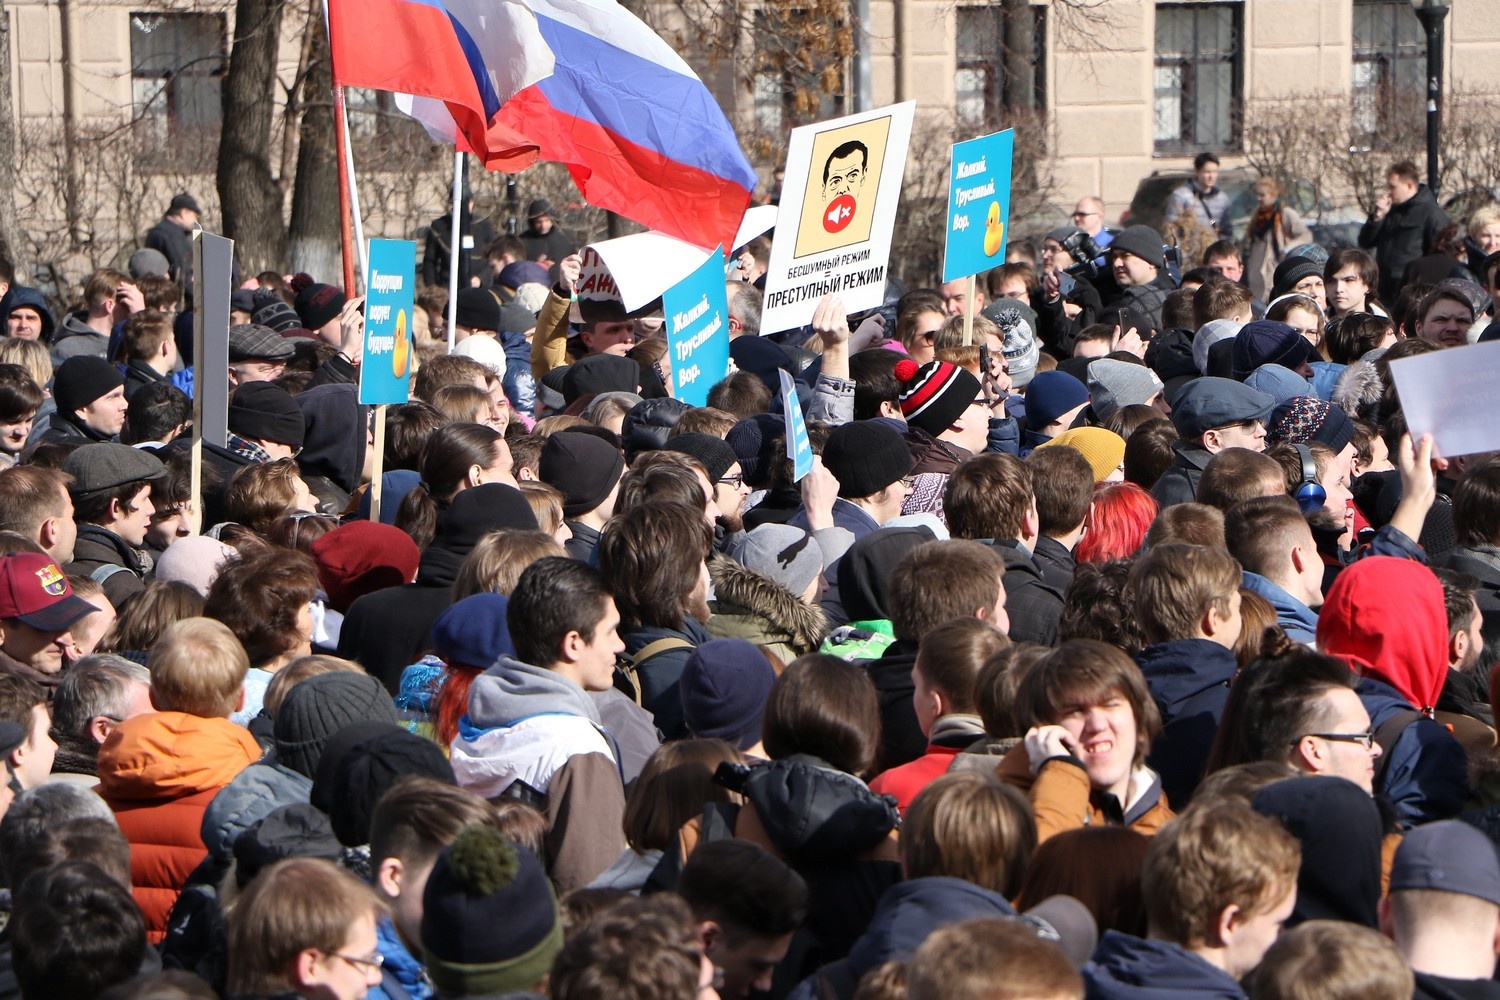 Начались суды над участниками антикоррупционного митинга в
Нижнем Новгороде